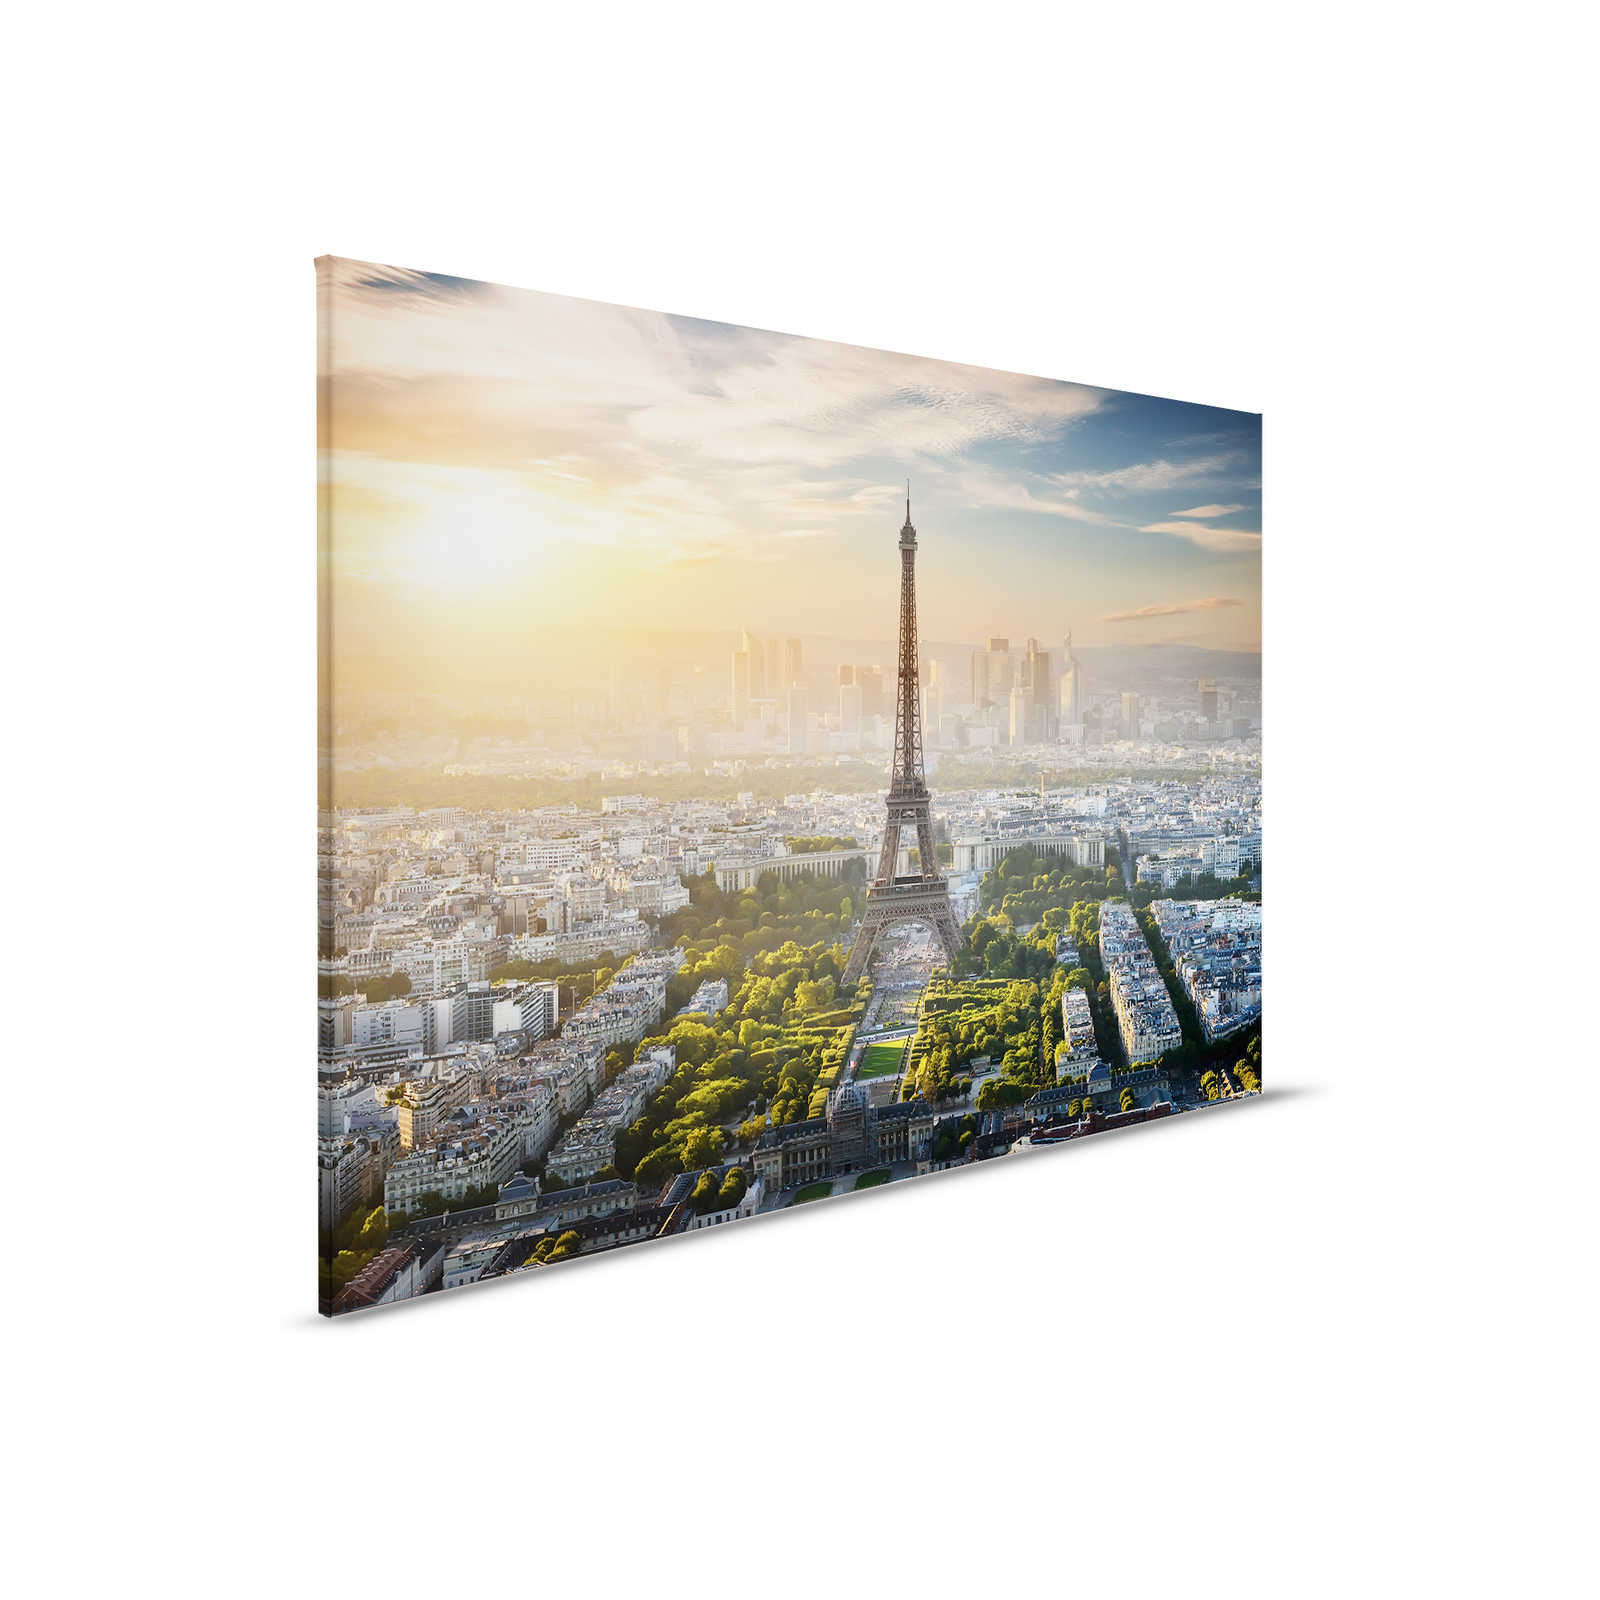         Canvas Eifel Tower Paris - 0.90 m x 0.60 m
    